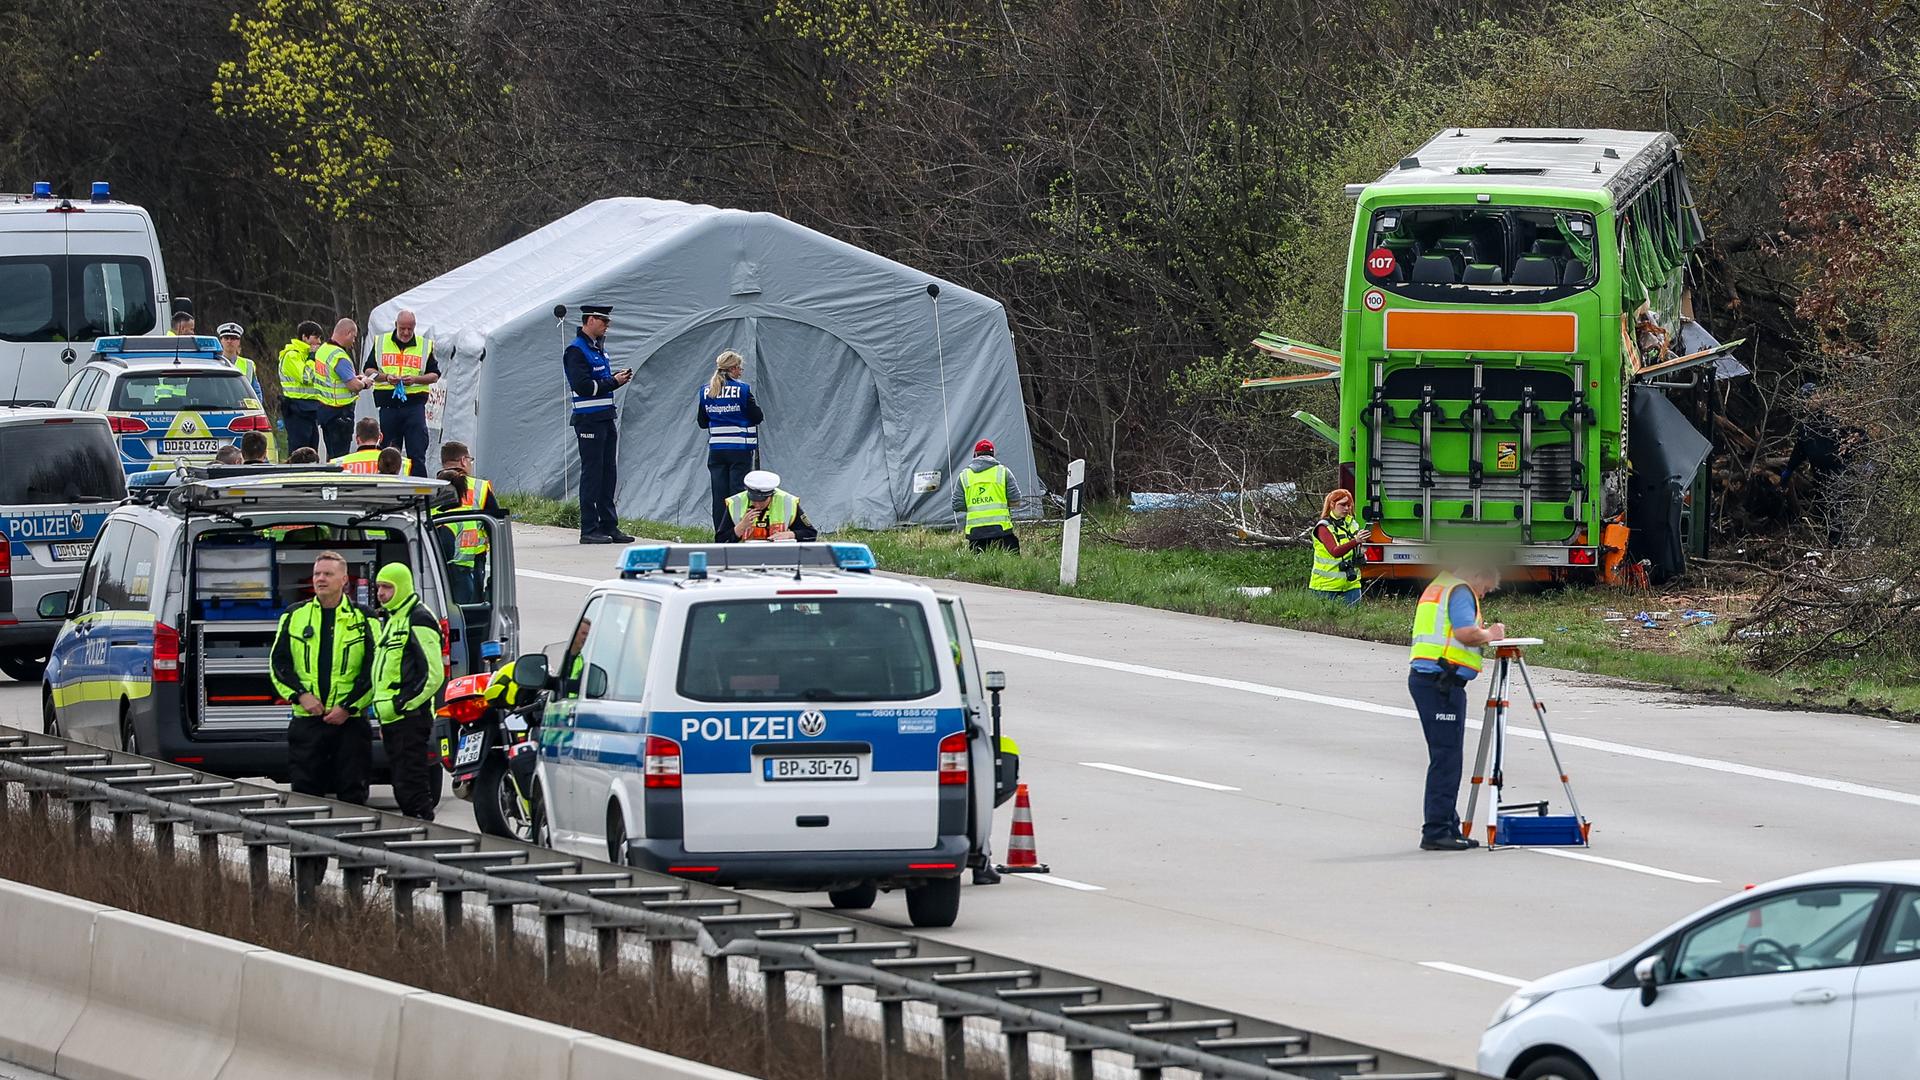 Der verunglückte Bus steht am Straßenrand; daneben ein weißes Zelt. Auf der Autobahn Polizeifahrzeuege und Polizisten.